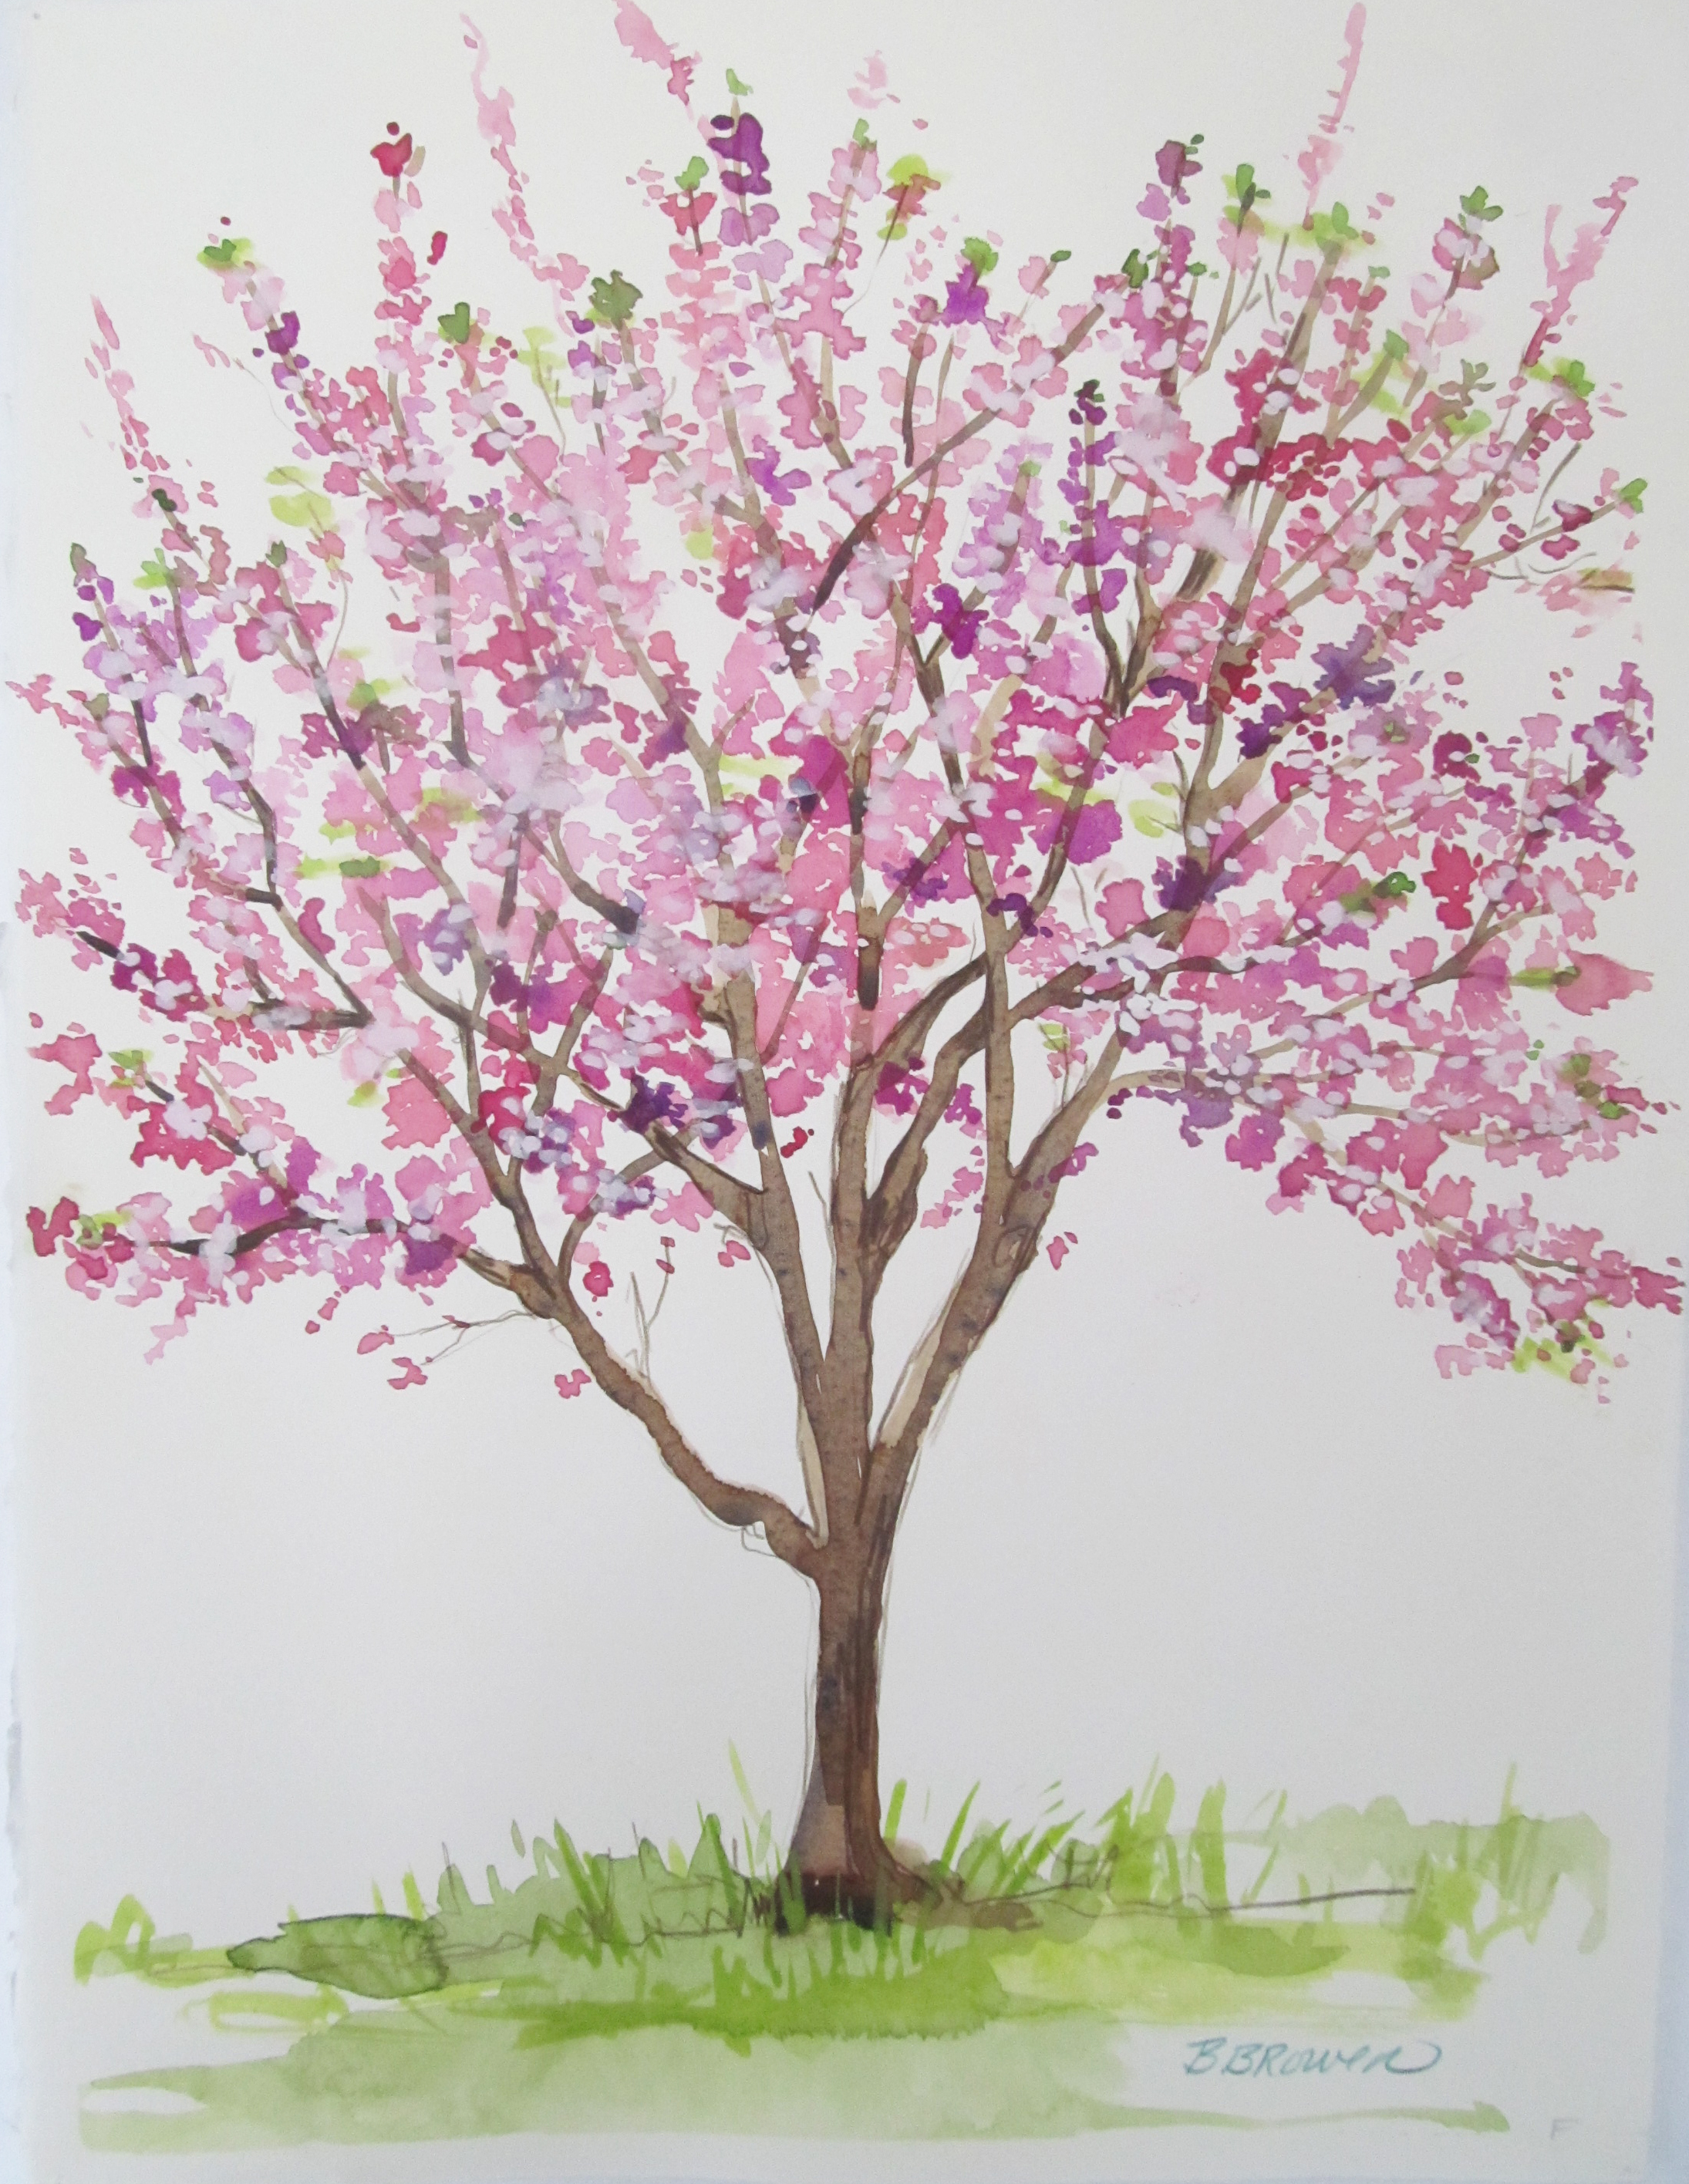 Beauty of Watercolor - Cherry Blossom Tree | VisArts